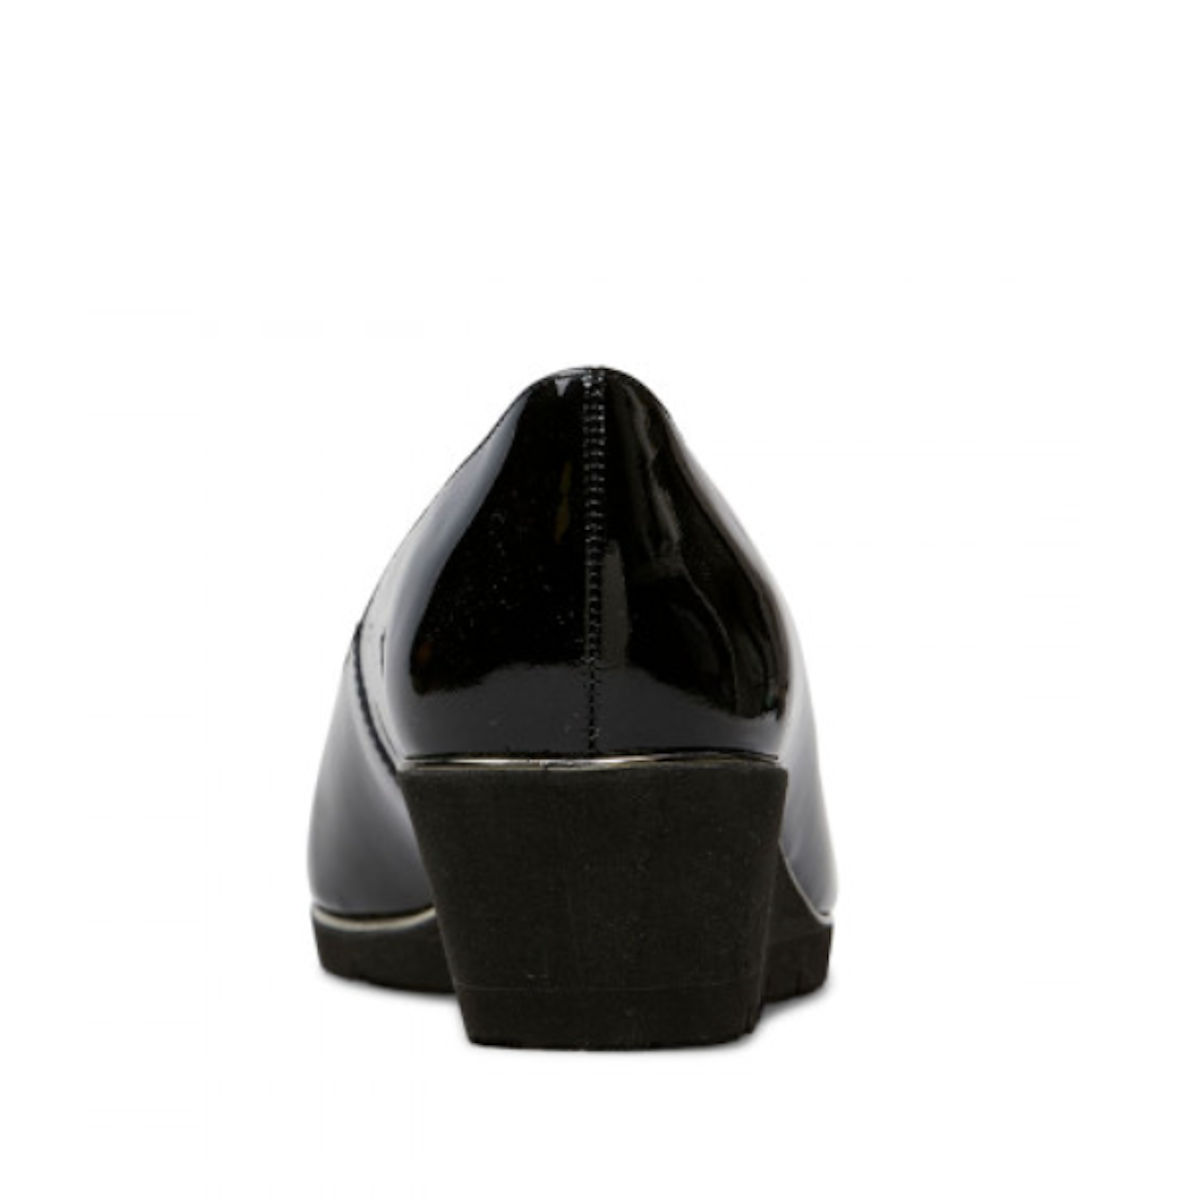 Van Dal Ariah Black Patent Wedge Shoes